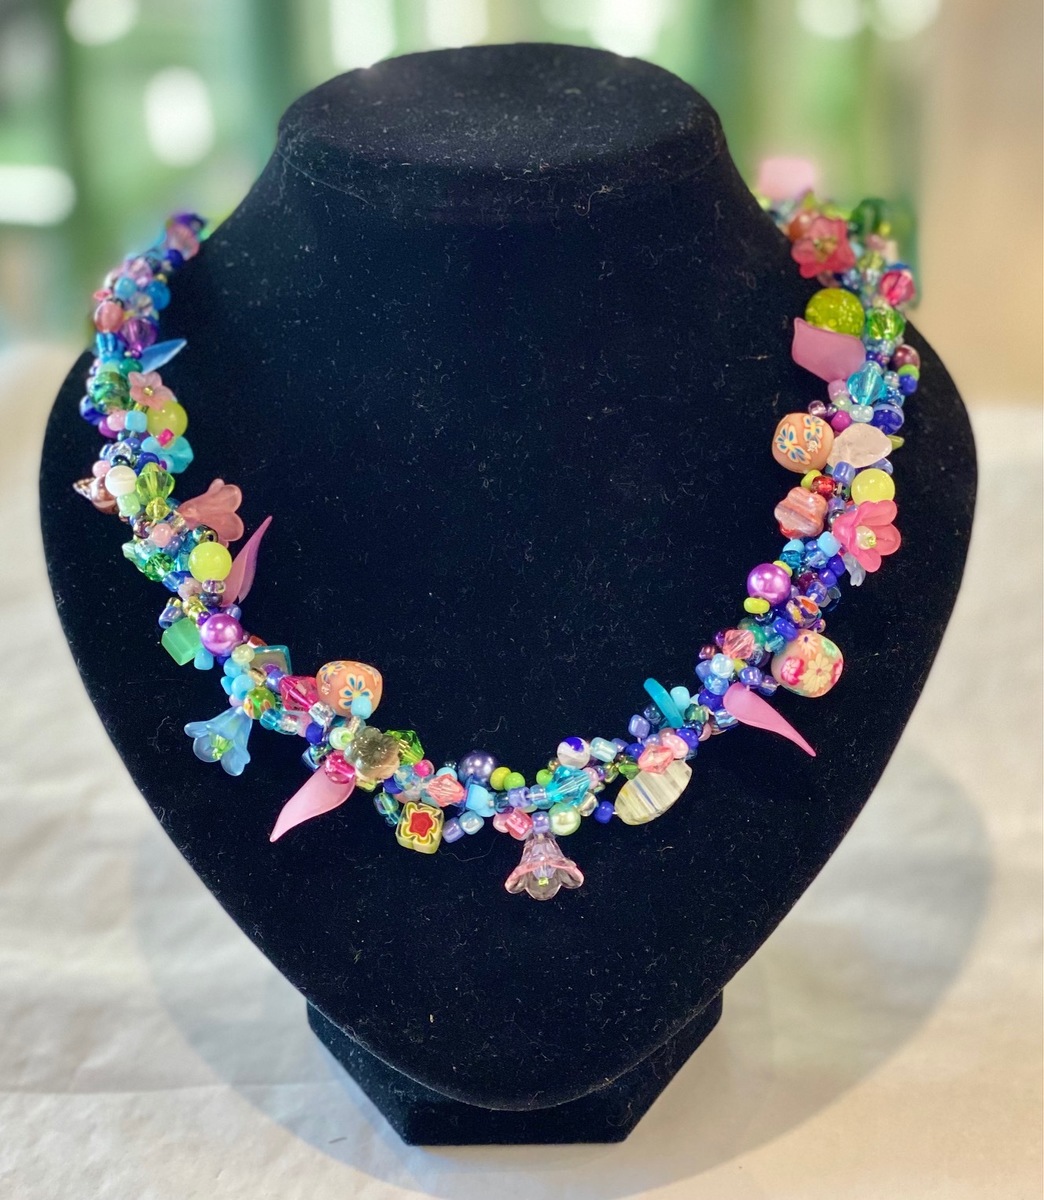 Multi colour (pink/blue) necklace